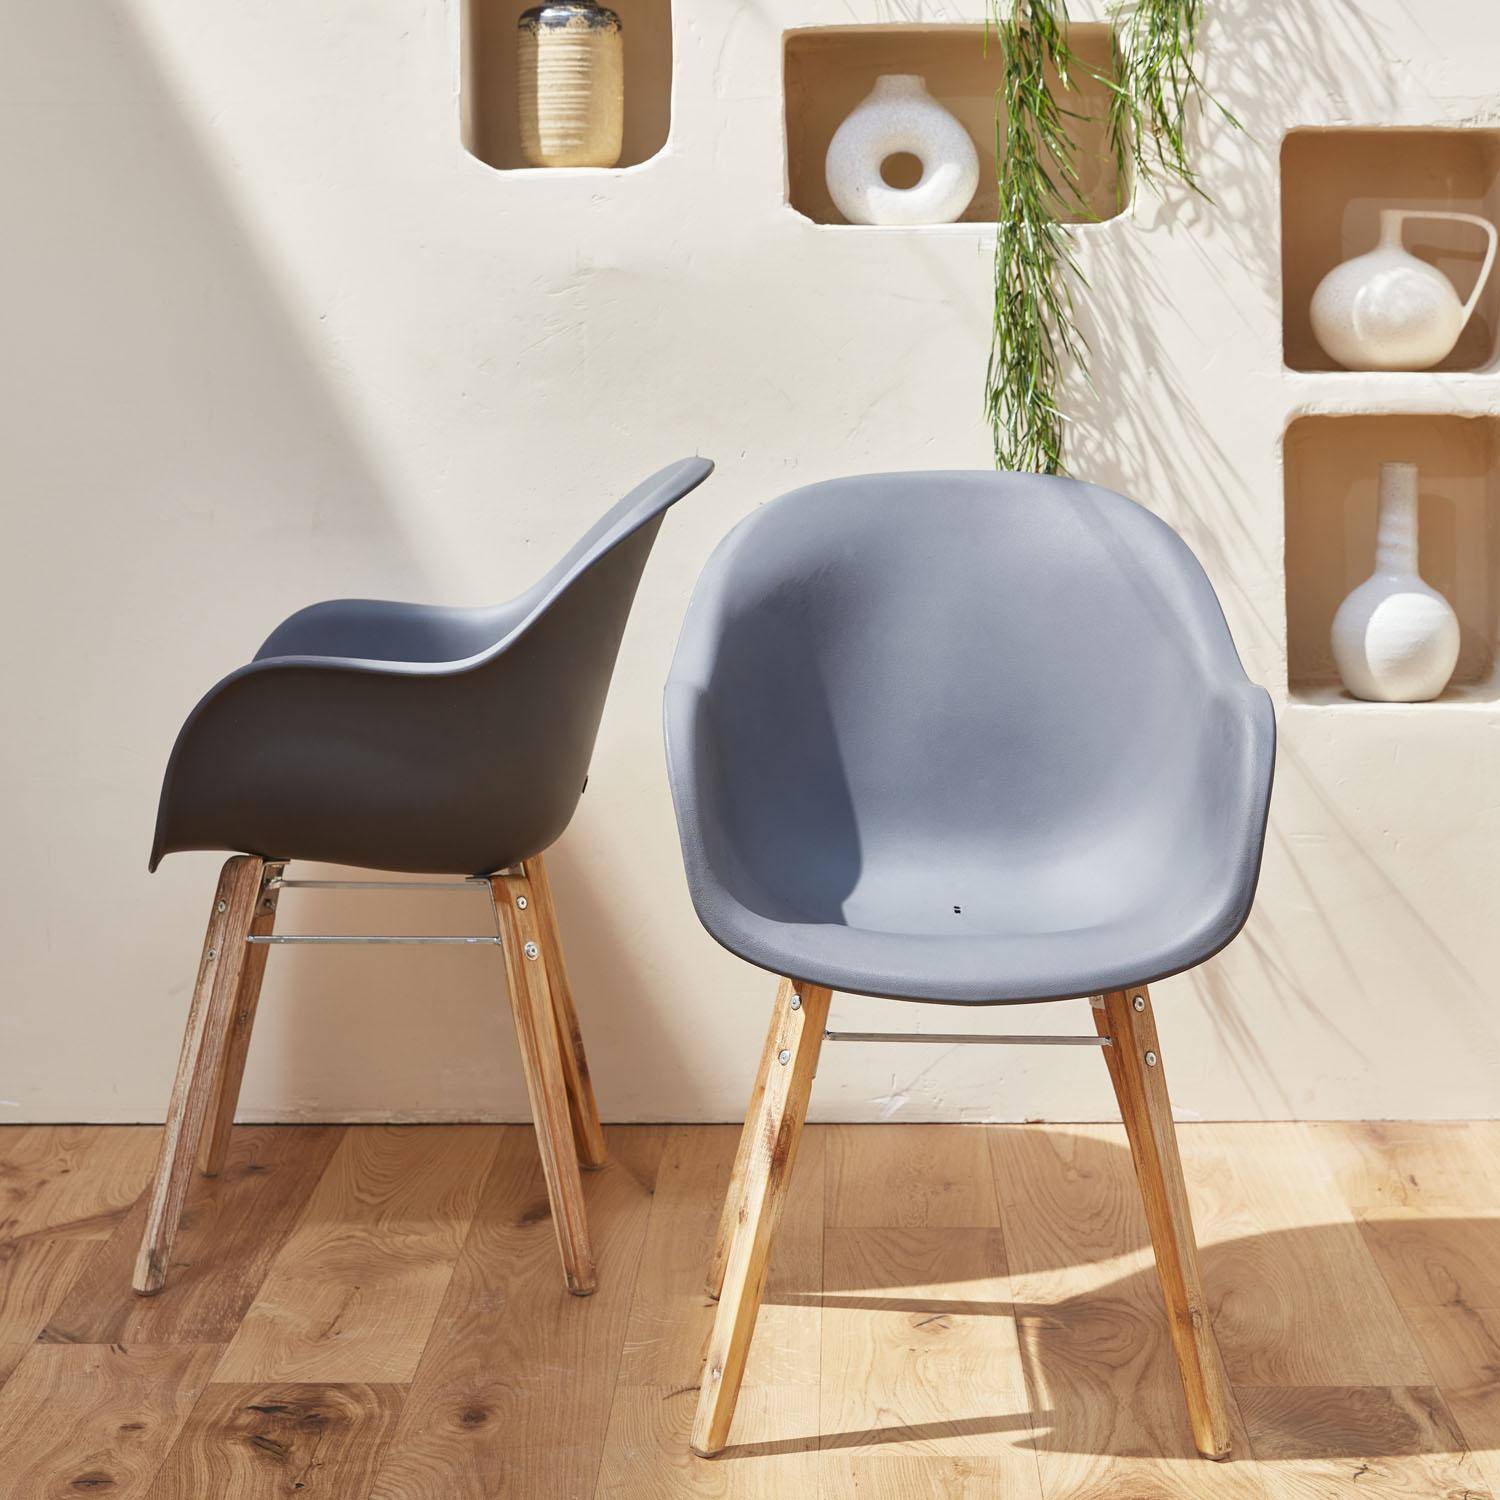 Set mit 2 CELEBES Skandinavischen Sesseln, Akazie und Kunststoff, grau, Innen/Außen Photo1